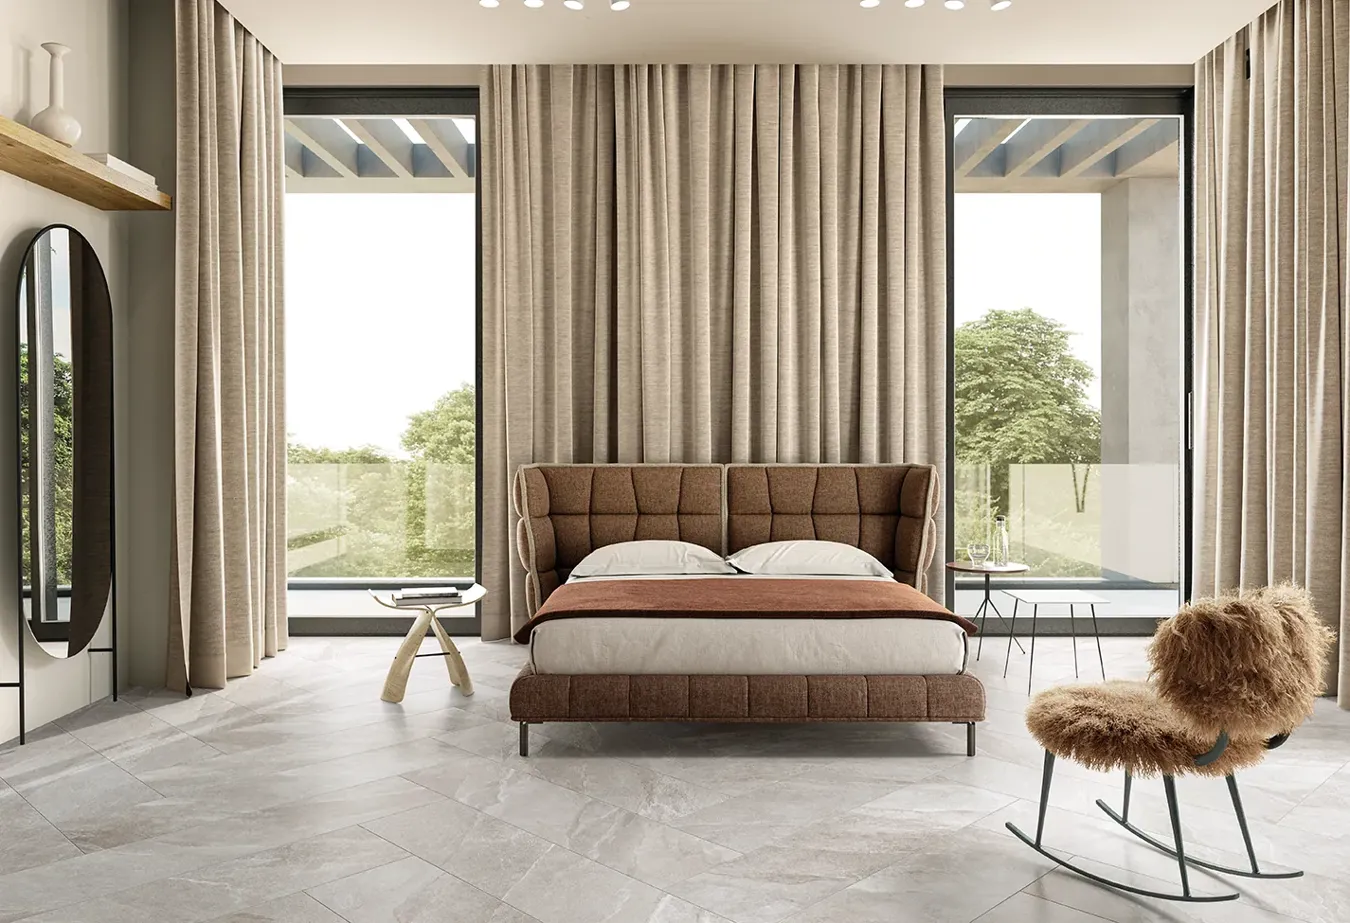 Habitación elegante con baldosas efecto piedra greige de la colección Ubik, cama marrón acolchada y cortinas a juego.